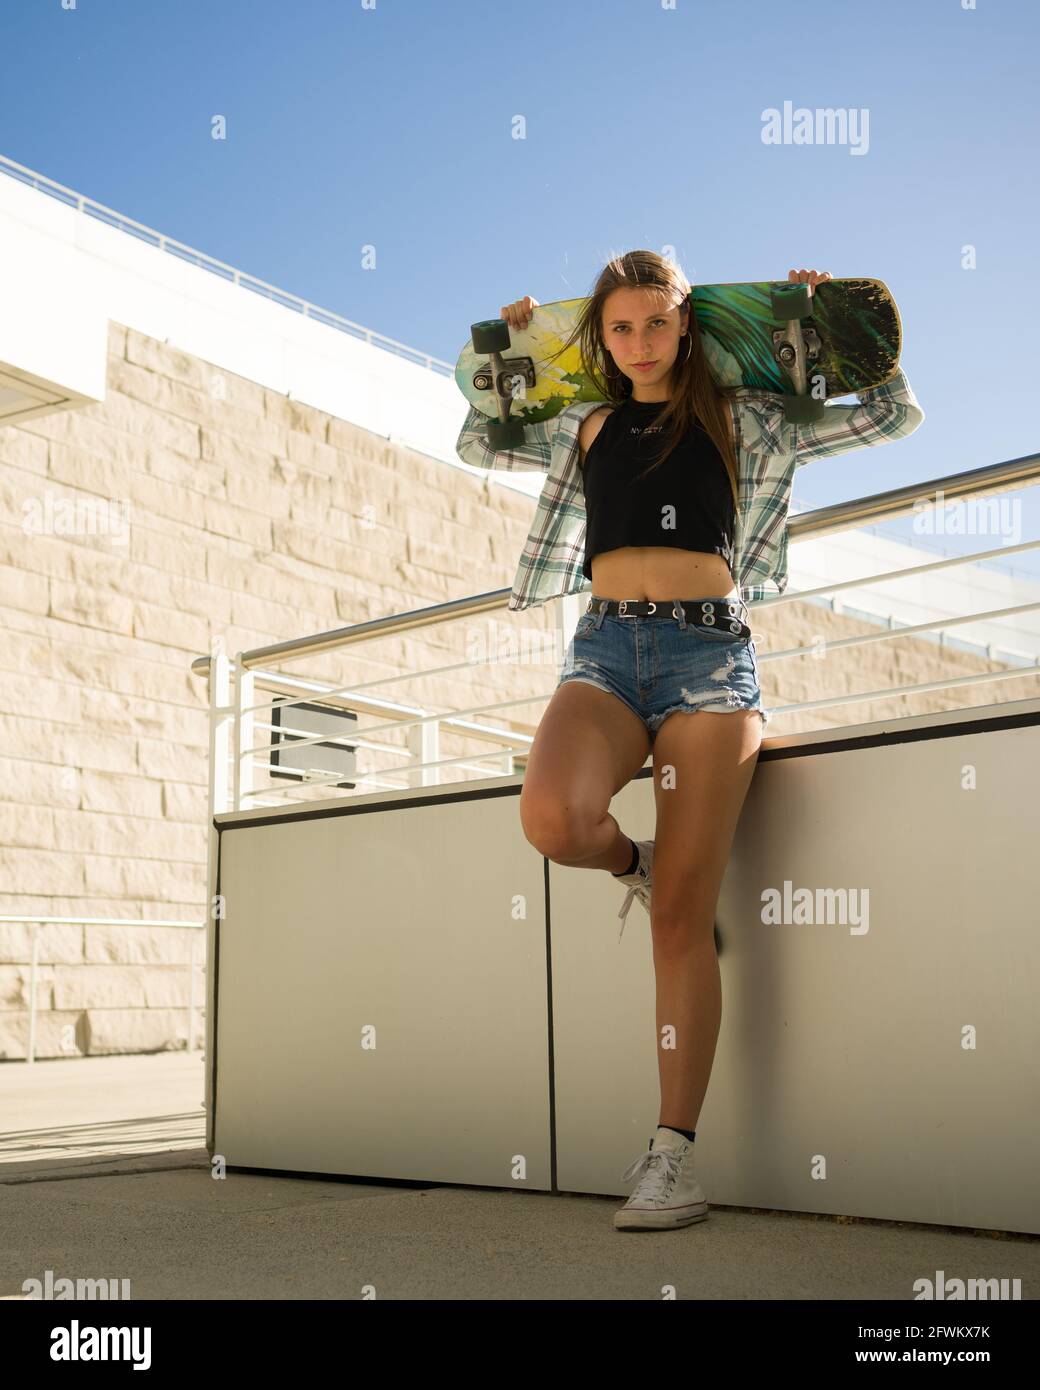 Junge Frau, die ein Skateboard in einer Innenstadtumgebung hält Stockfoto